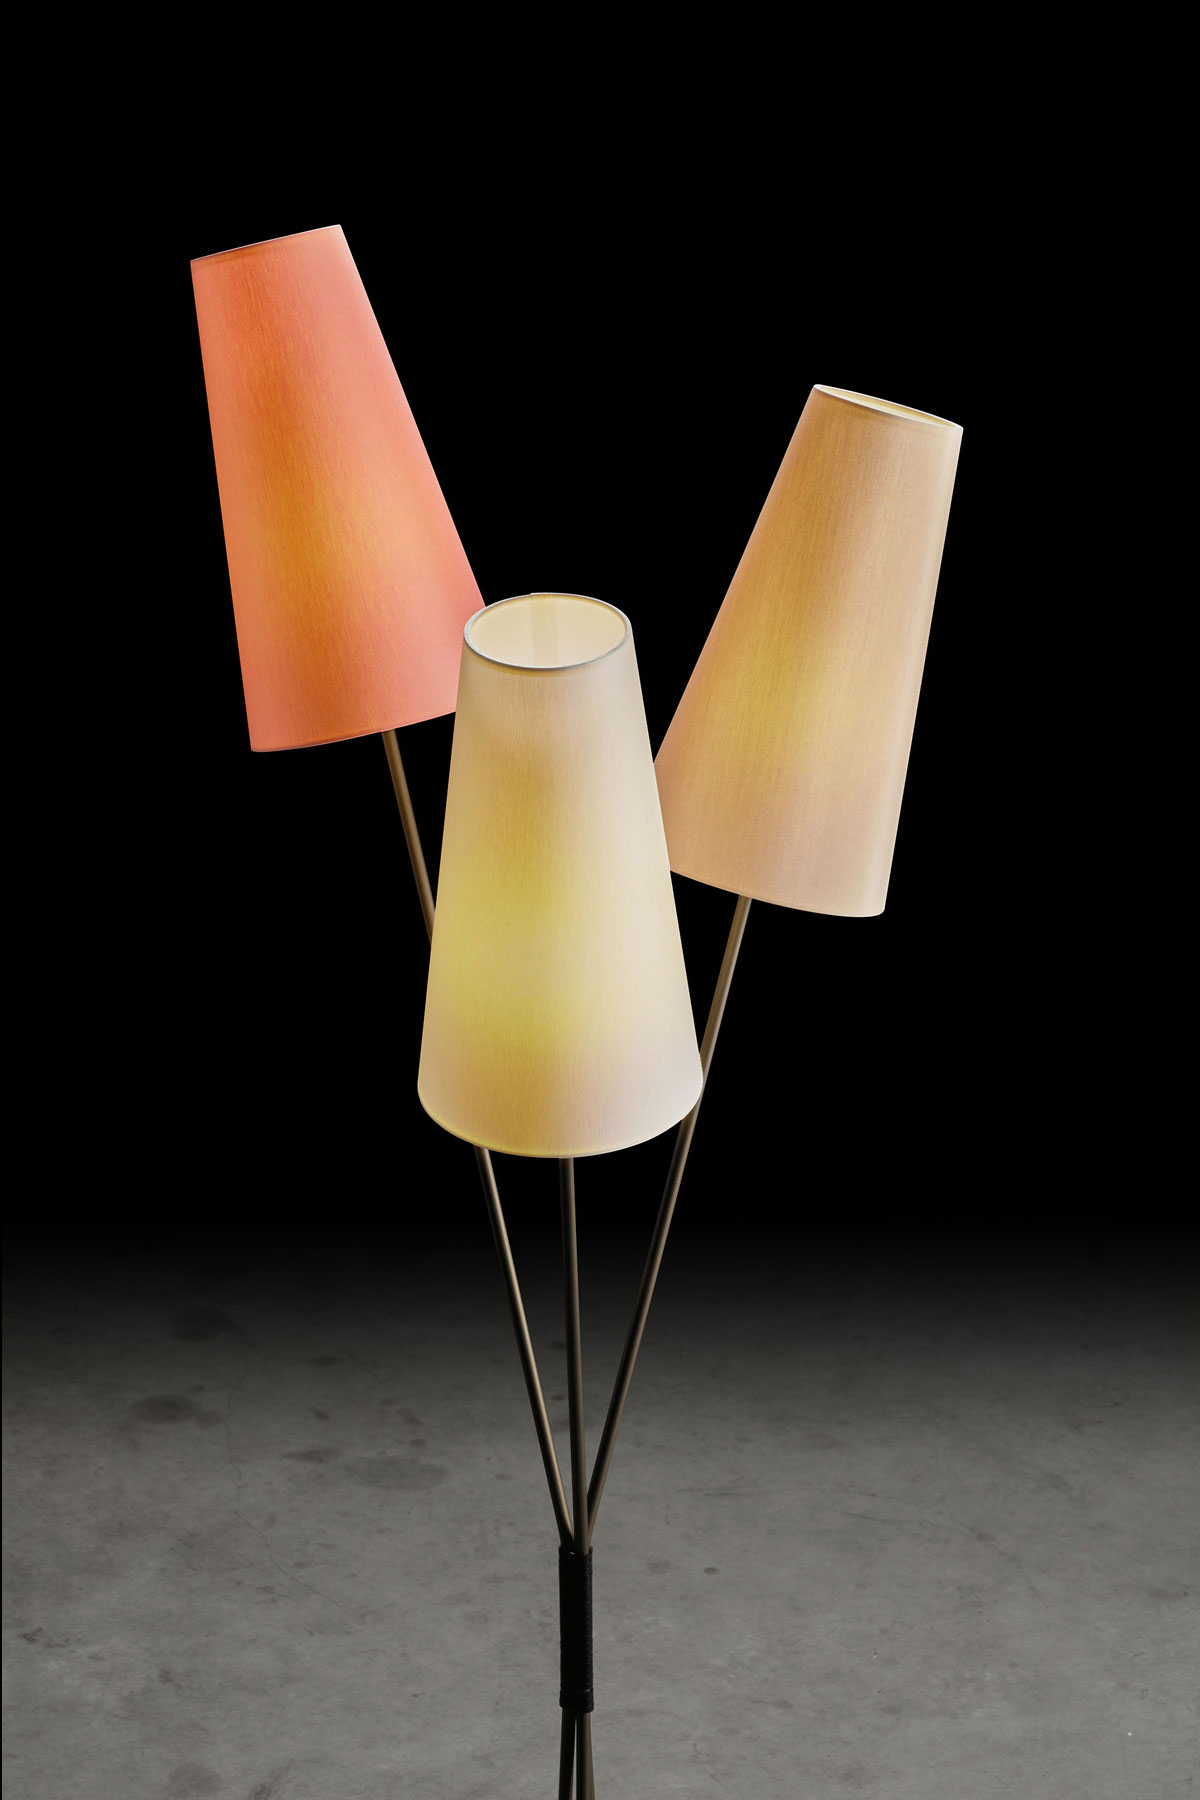 FIFTIES – Stehlampe im 50er Jahre-Look mit drei Schirmen im Bündel, viele Farben: Gestell in Fumé matt, Schirme in Rosa, Champagner, Sand